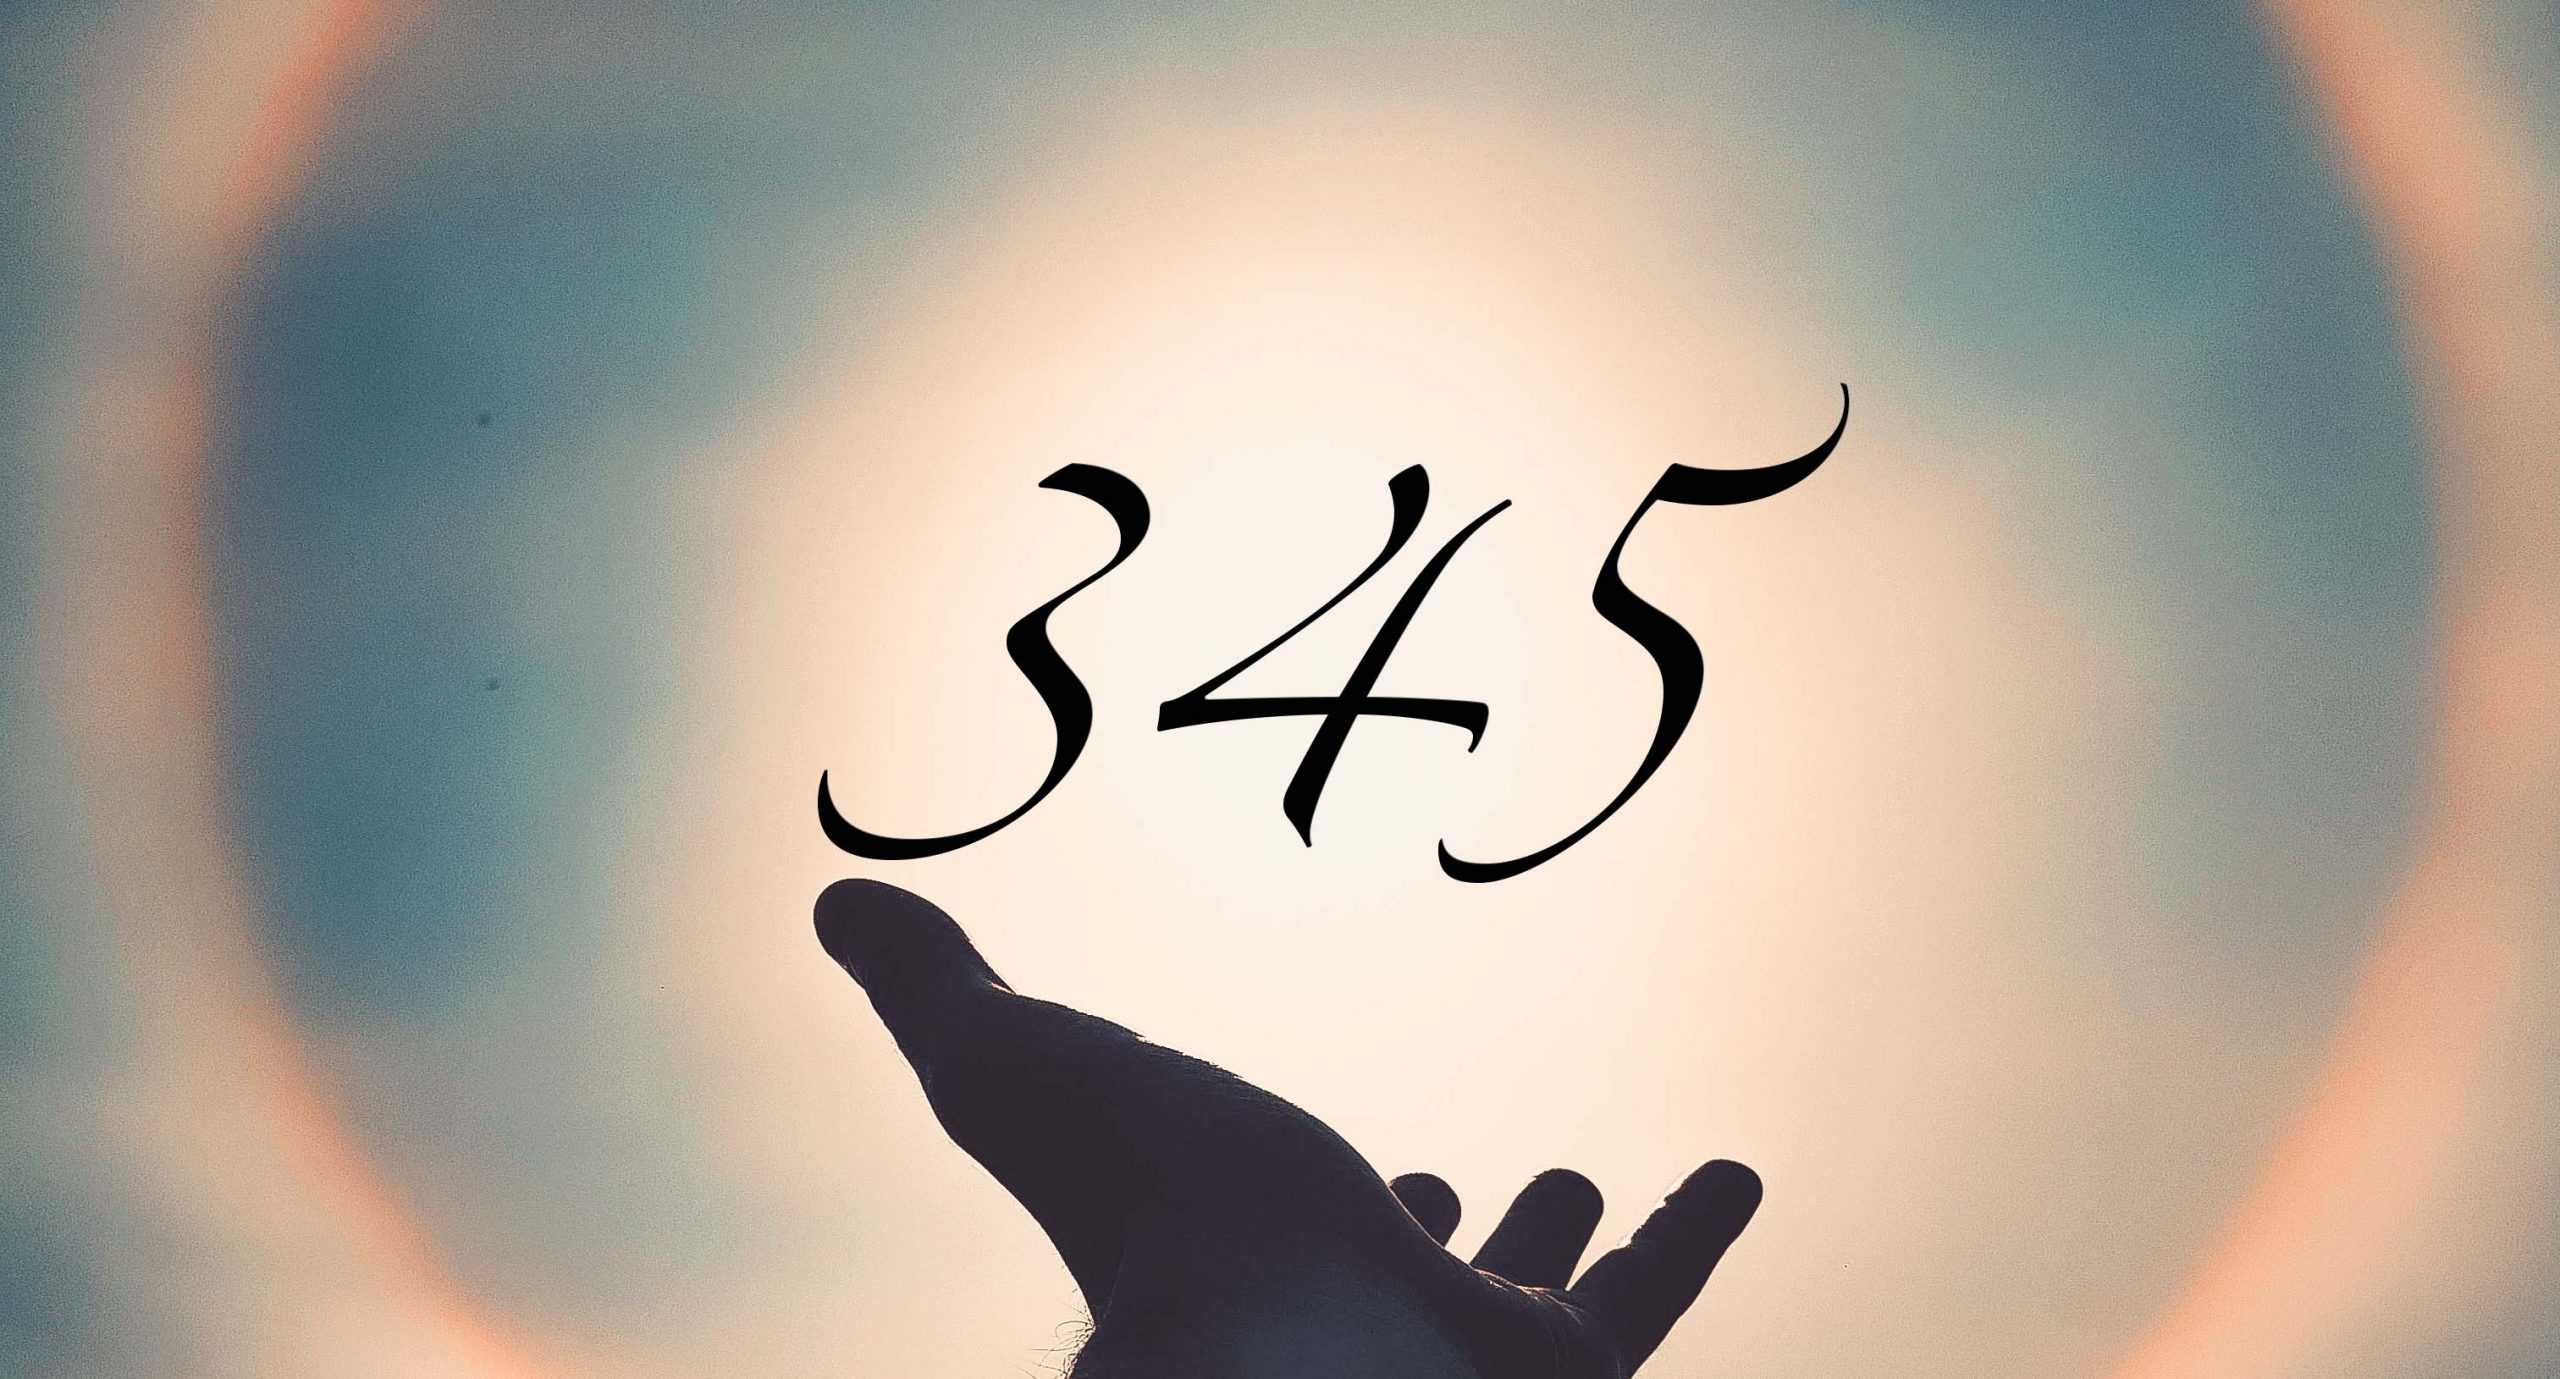 Signification du nombre 345